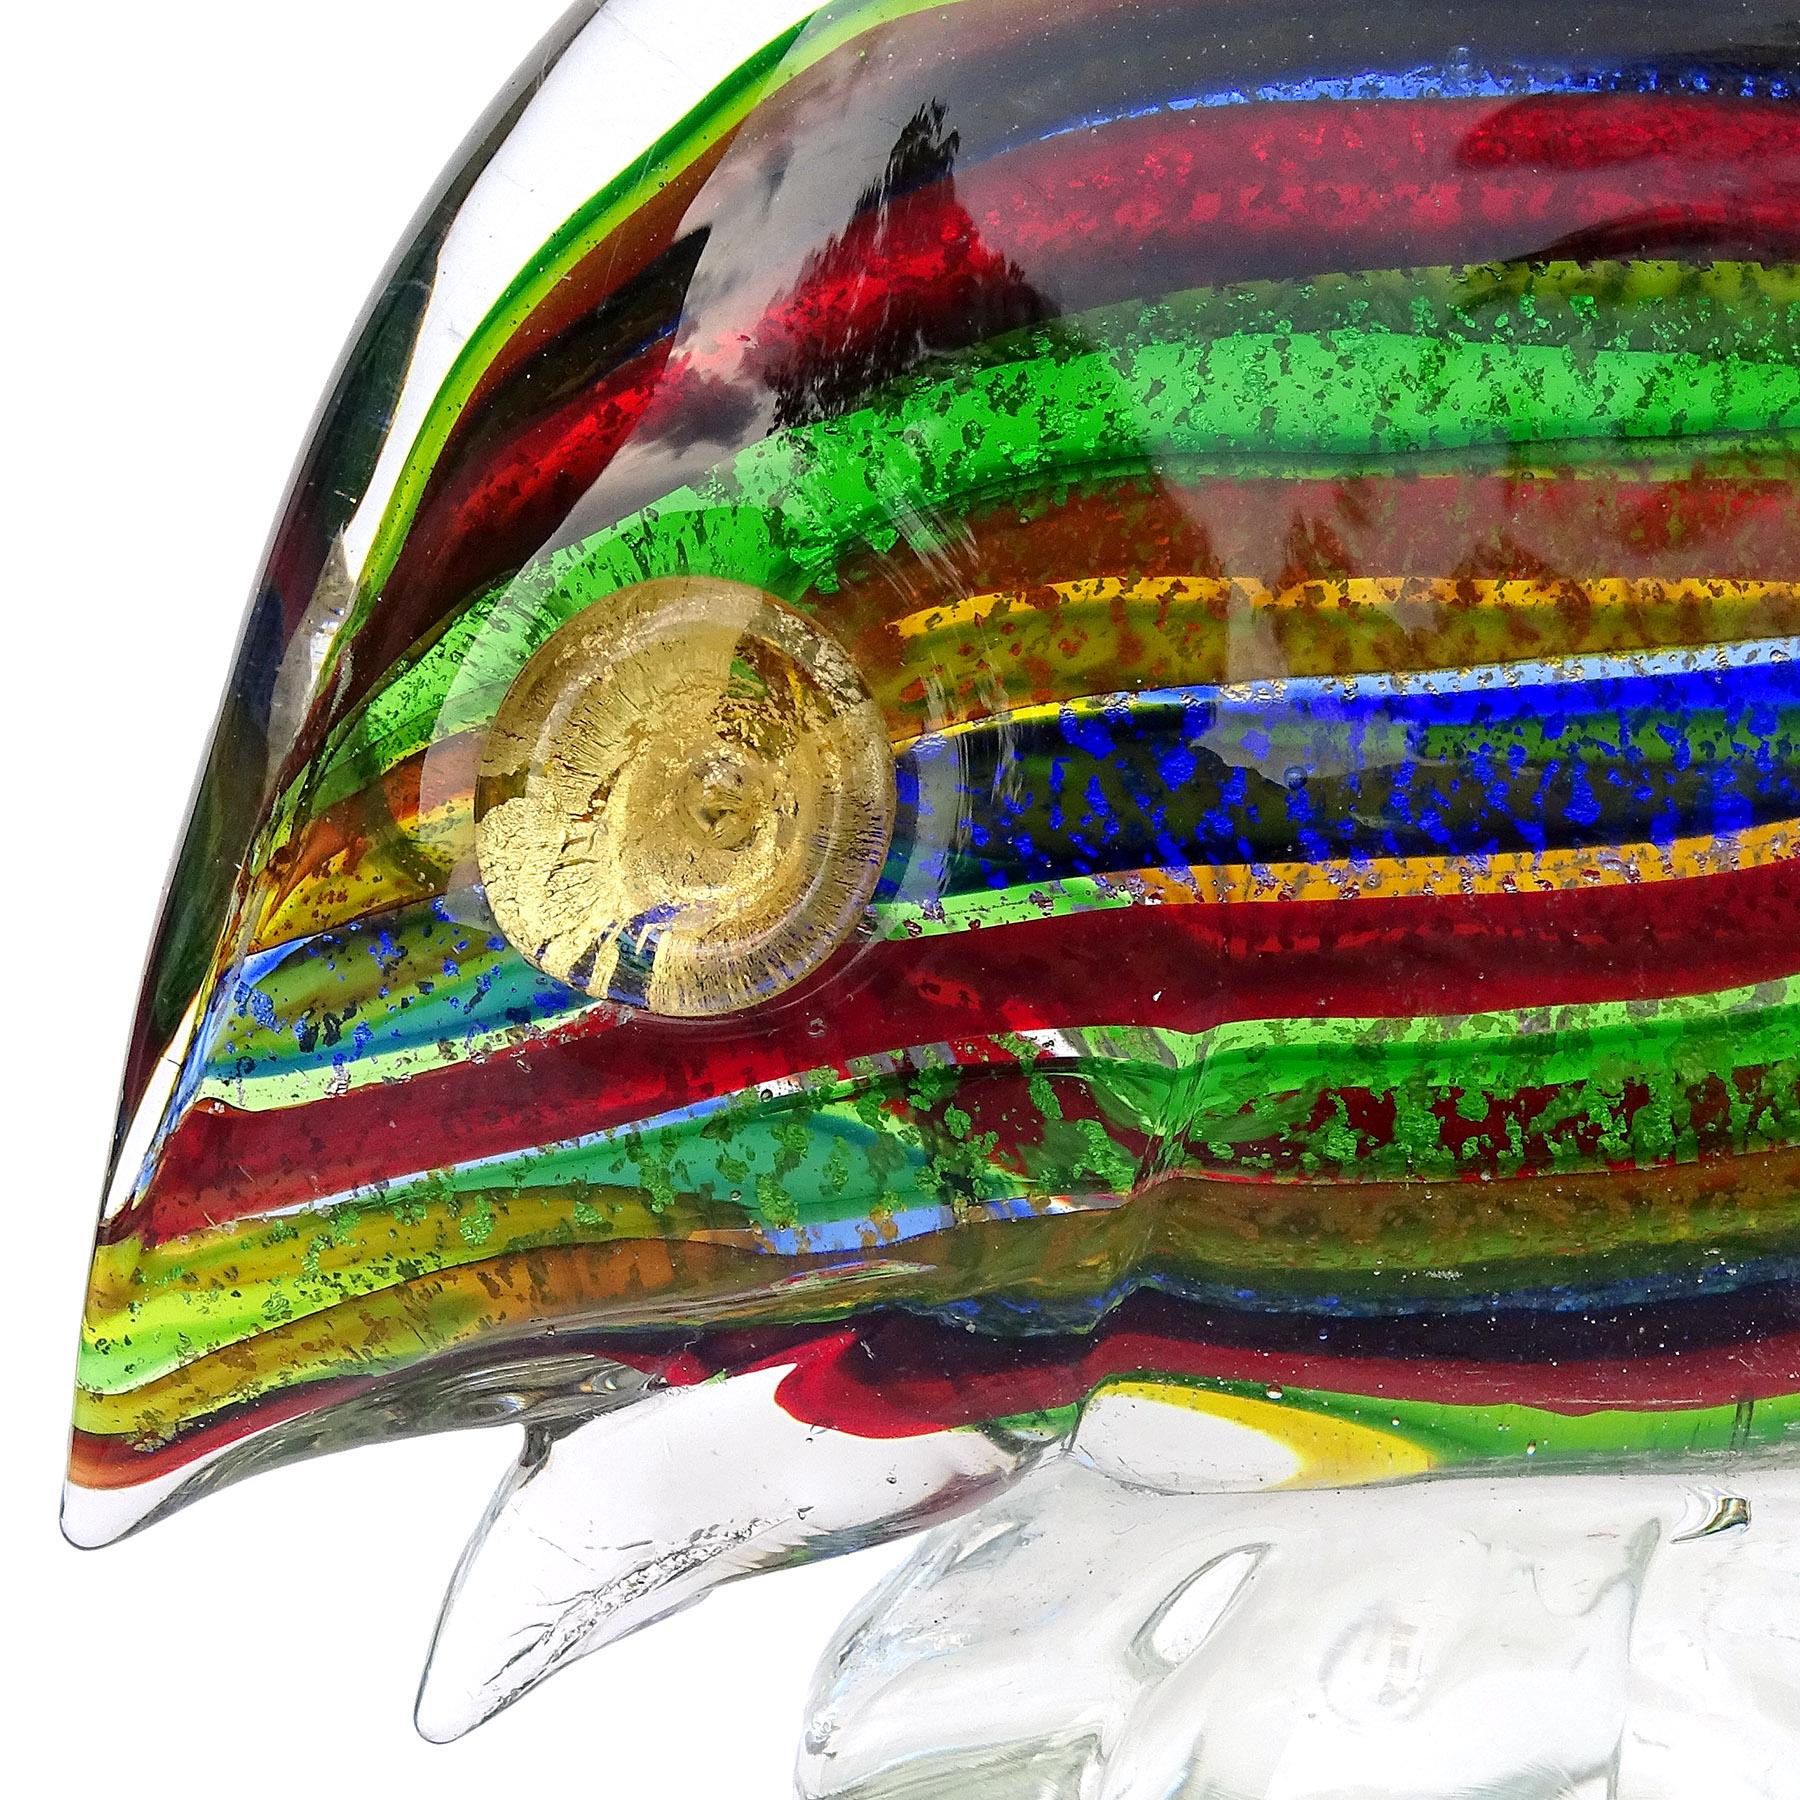 Magnifique figurine de poisson en verre d'art italien de Murano soufflé à la main avec des rayures arc-en-ciel et des mouchetures d'argent et d'or. Attribuée à la société A.VE.M. (Arte Vetraria Muranese). Le poisson présente des bandes alternées de